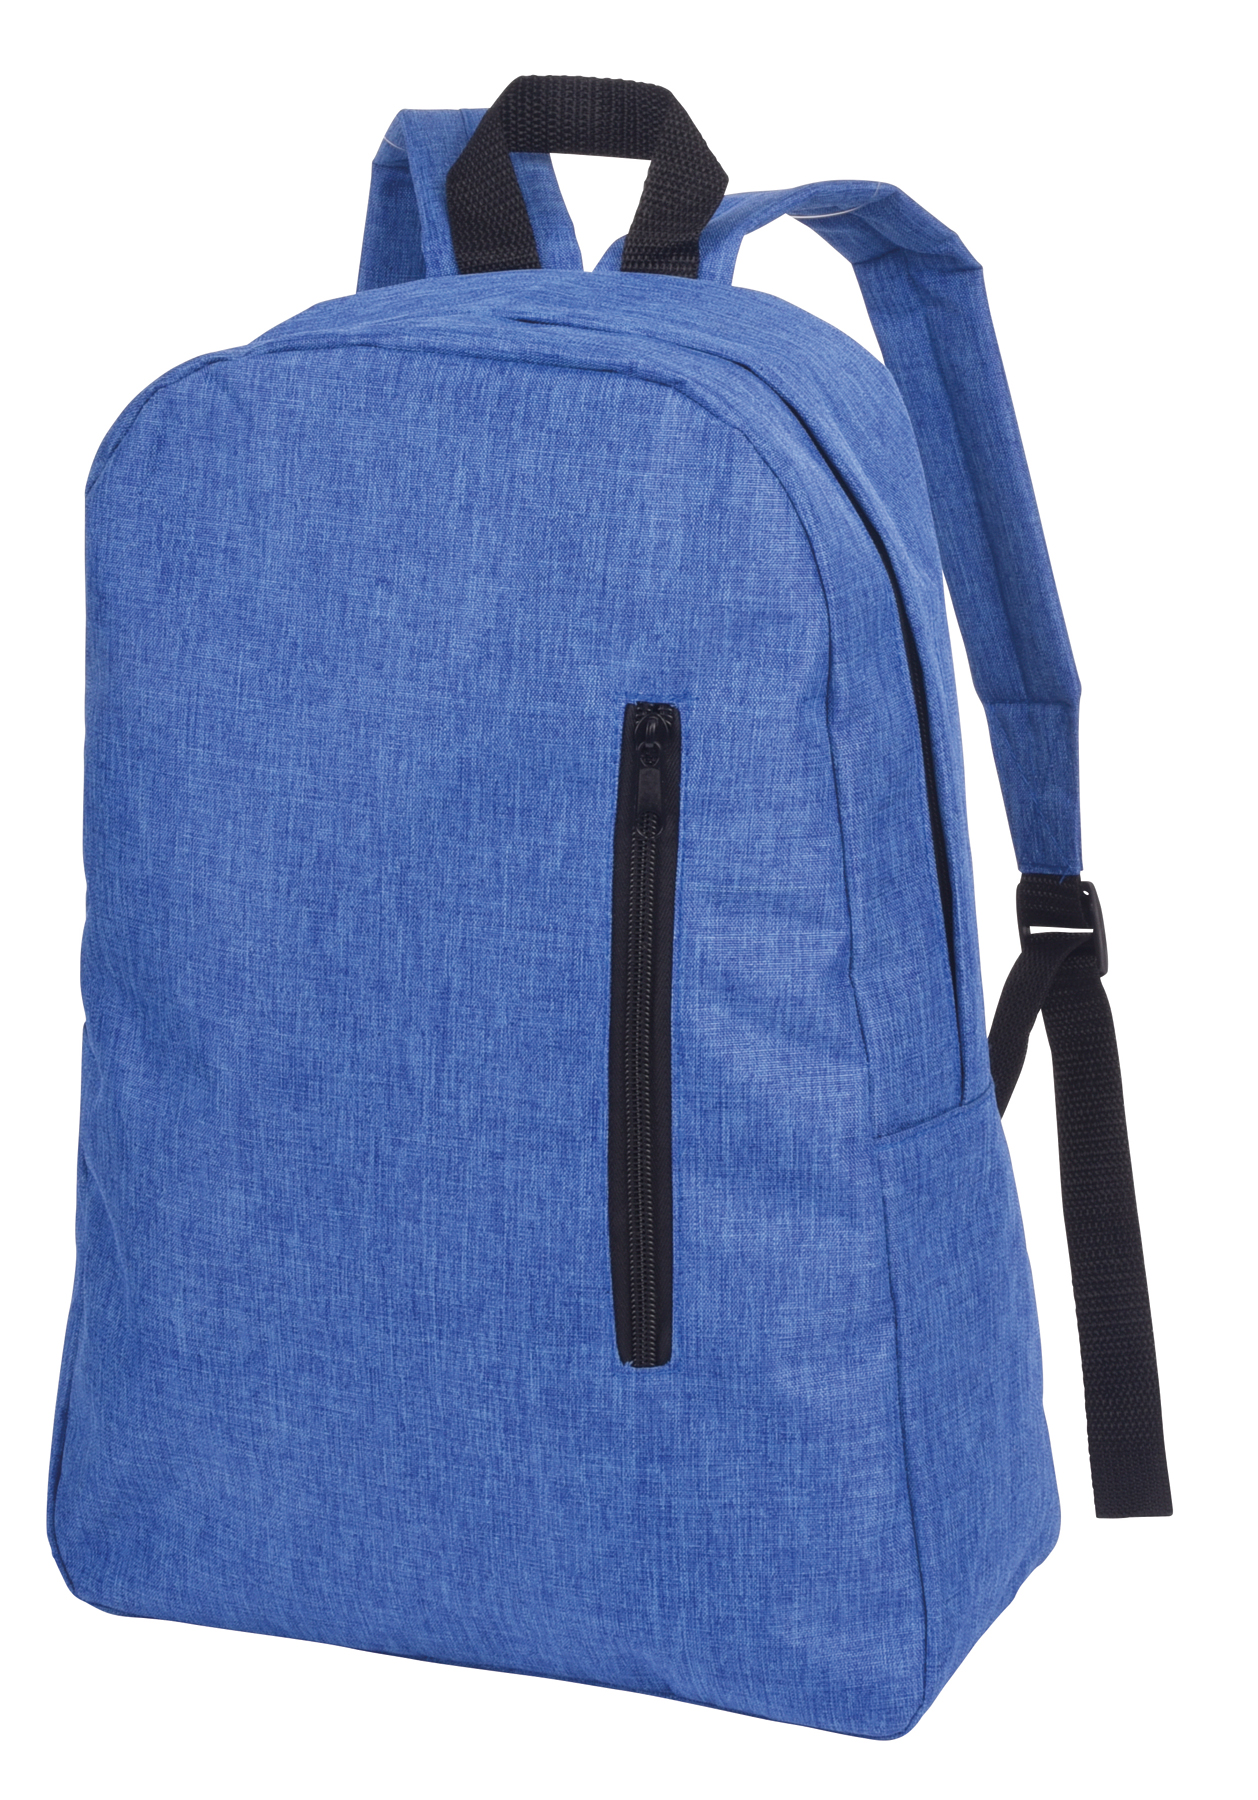 Backpack OSLO - blue